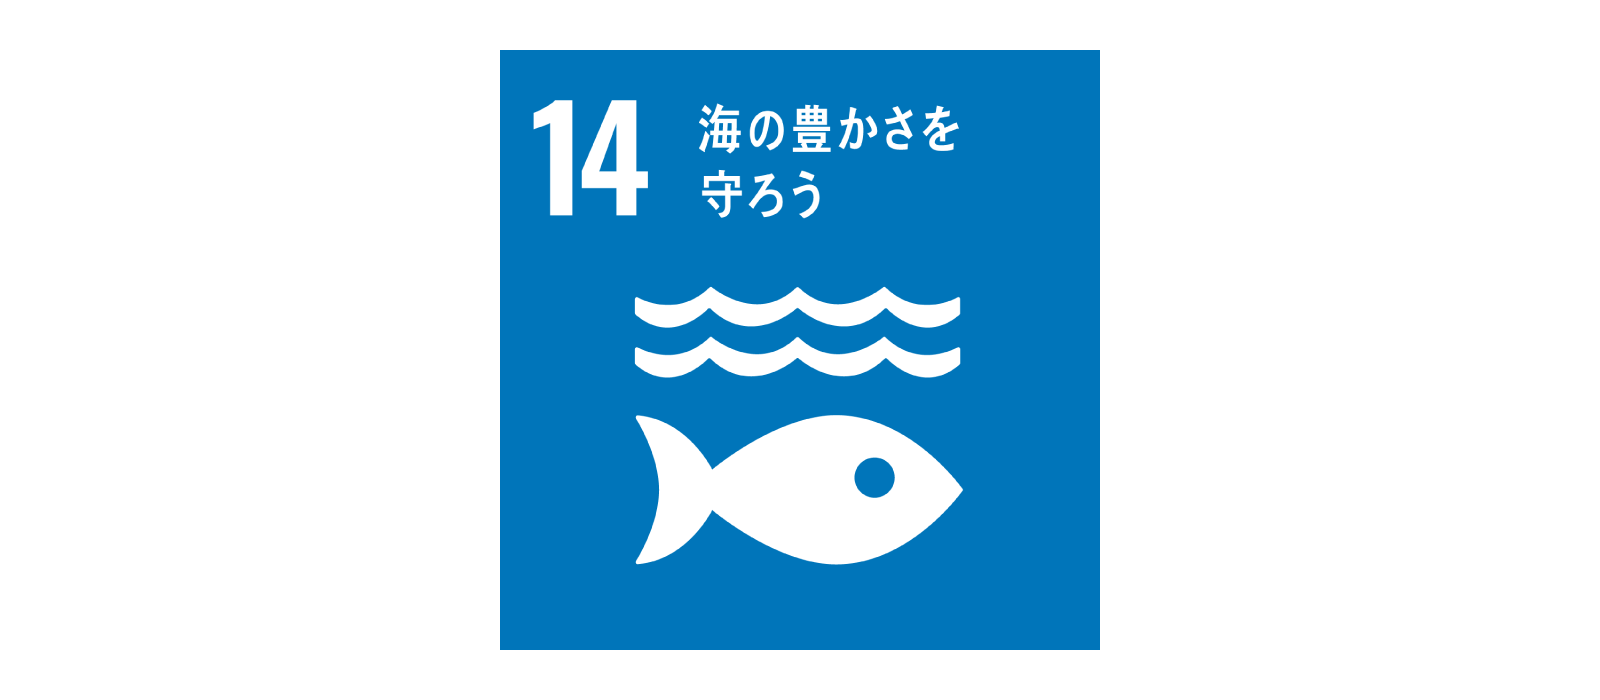 SDGs 目標14 海の豊かさを守ろう